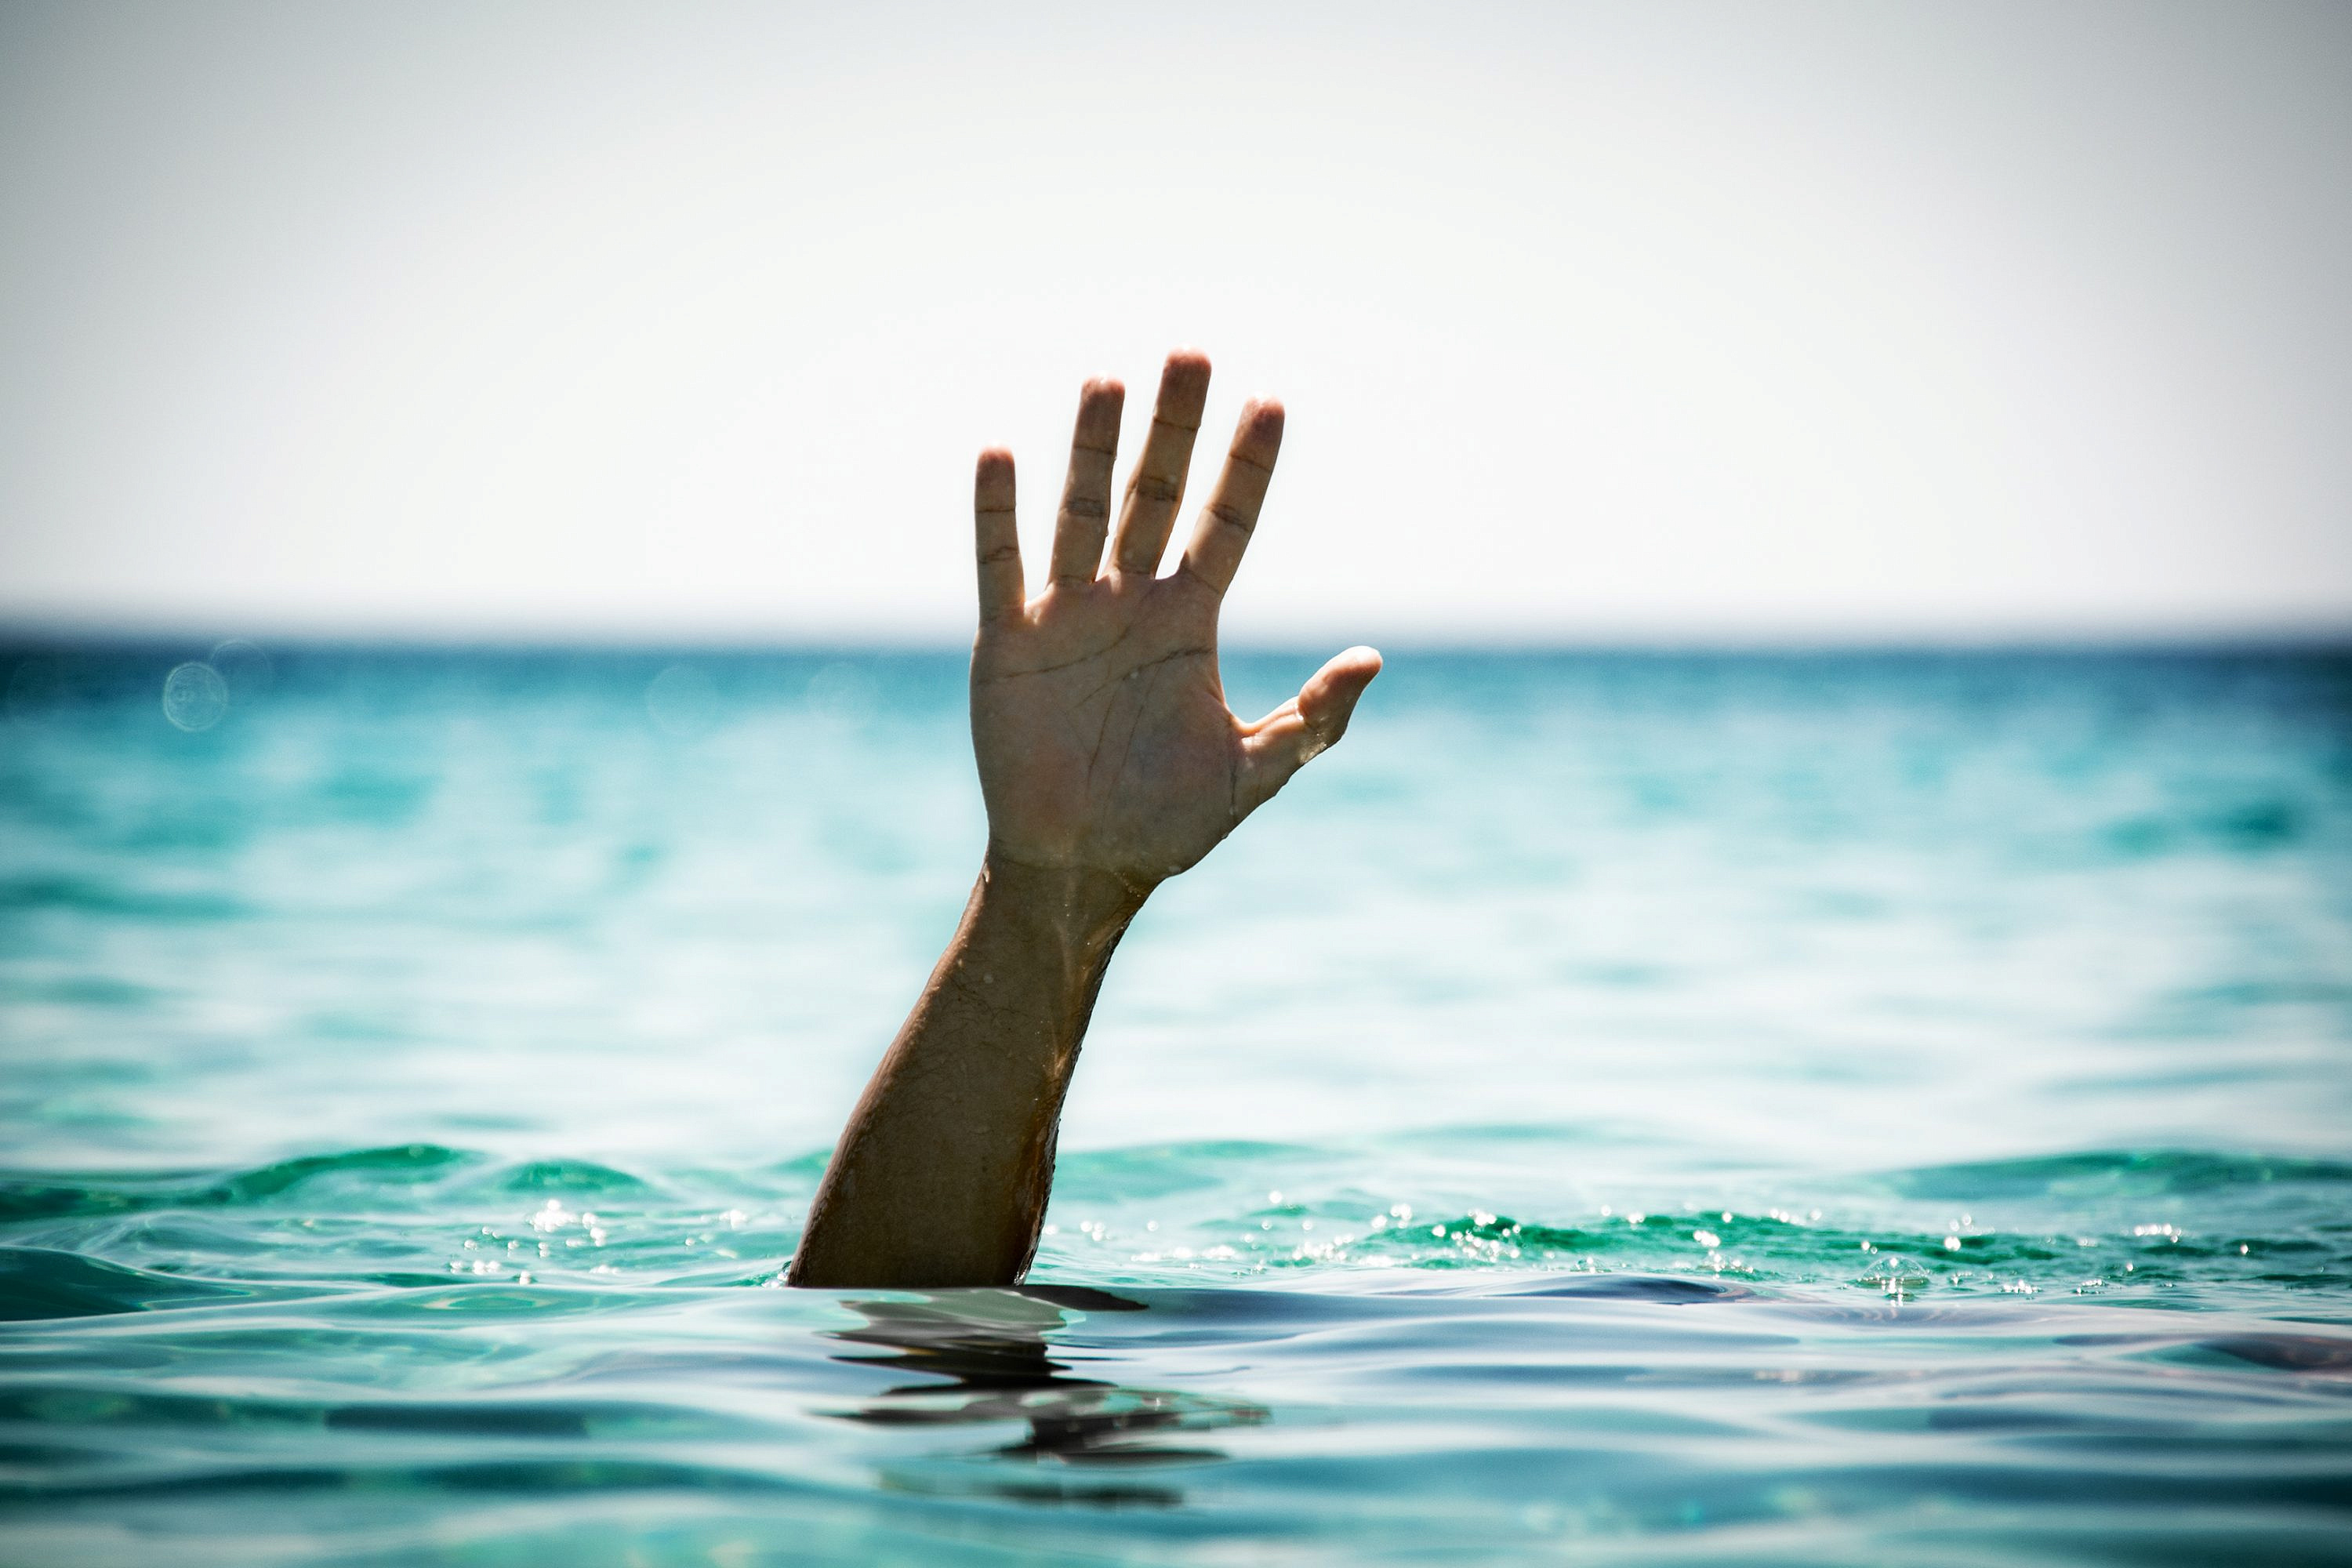 Мужчина едва не утонул при попытке переплыть Терлецкий пруд